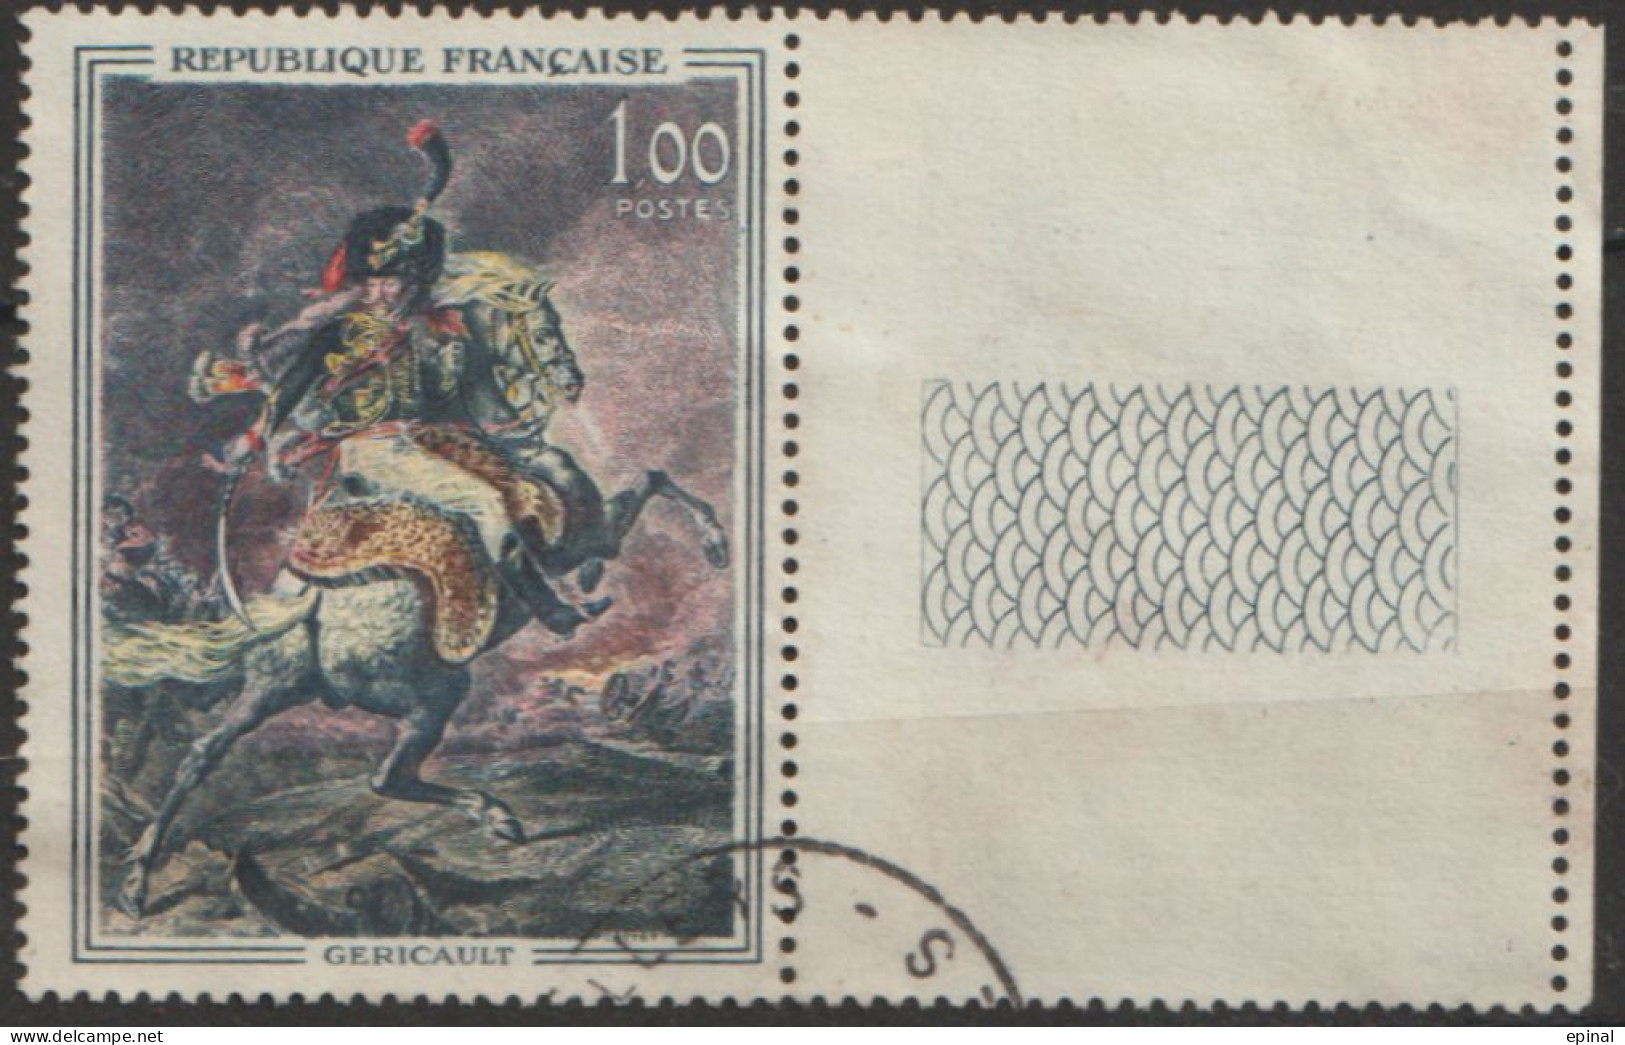 FRANCE : N° 1365 Oblitéré Bord De Feuille ("Officier De Chasseurs De La Garde" De Géricault) - PRIX FIXE - - Oblitérés